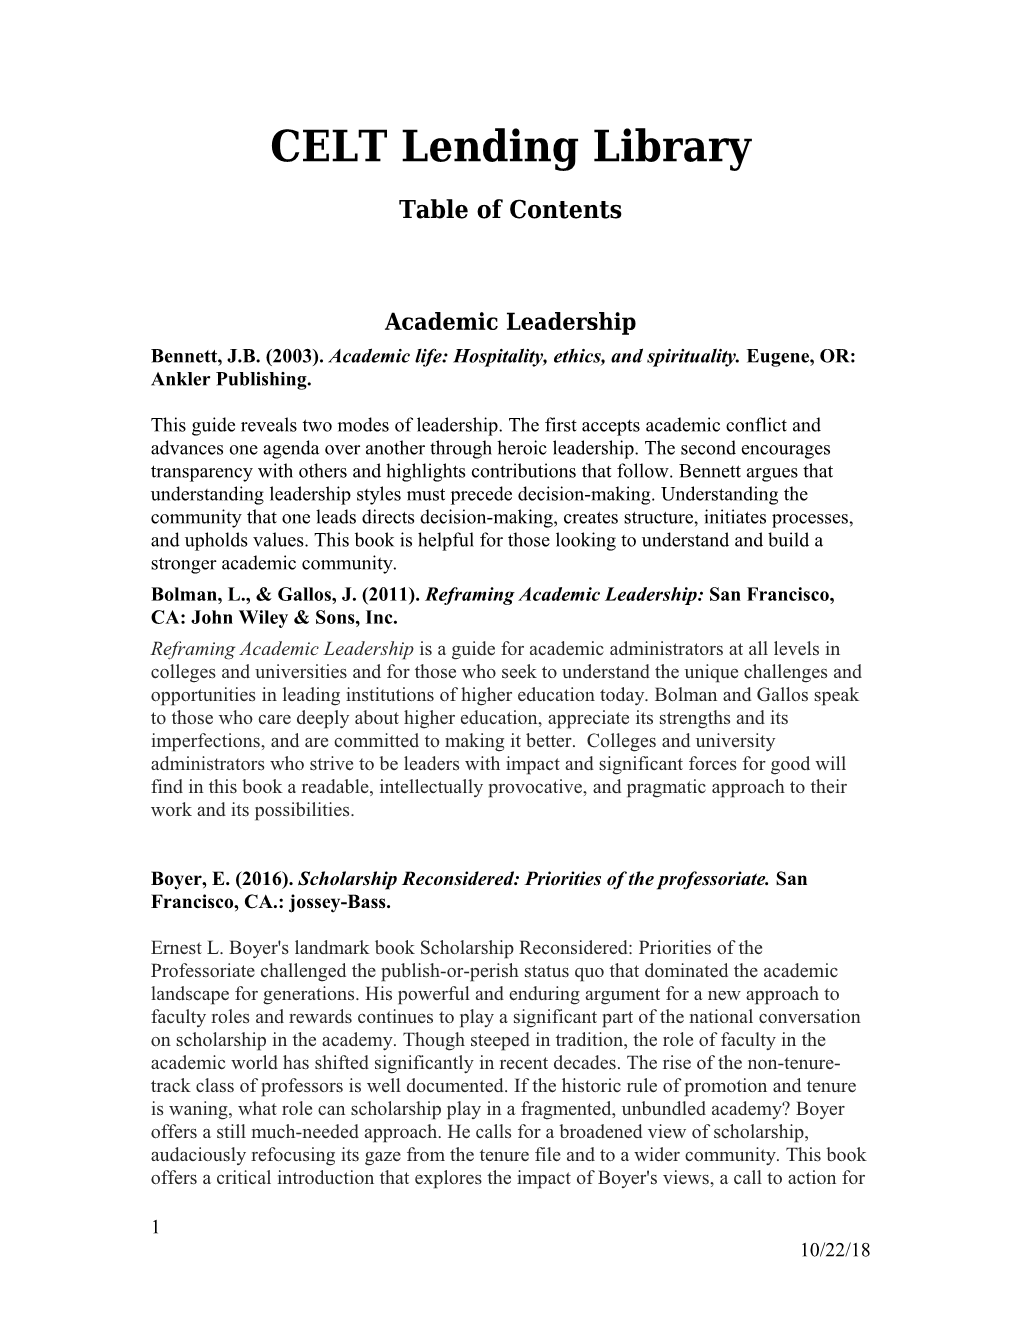 CELT Lending Library